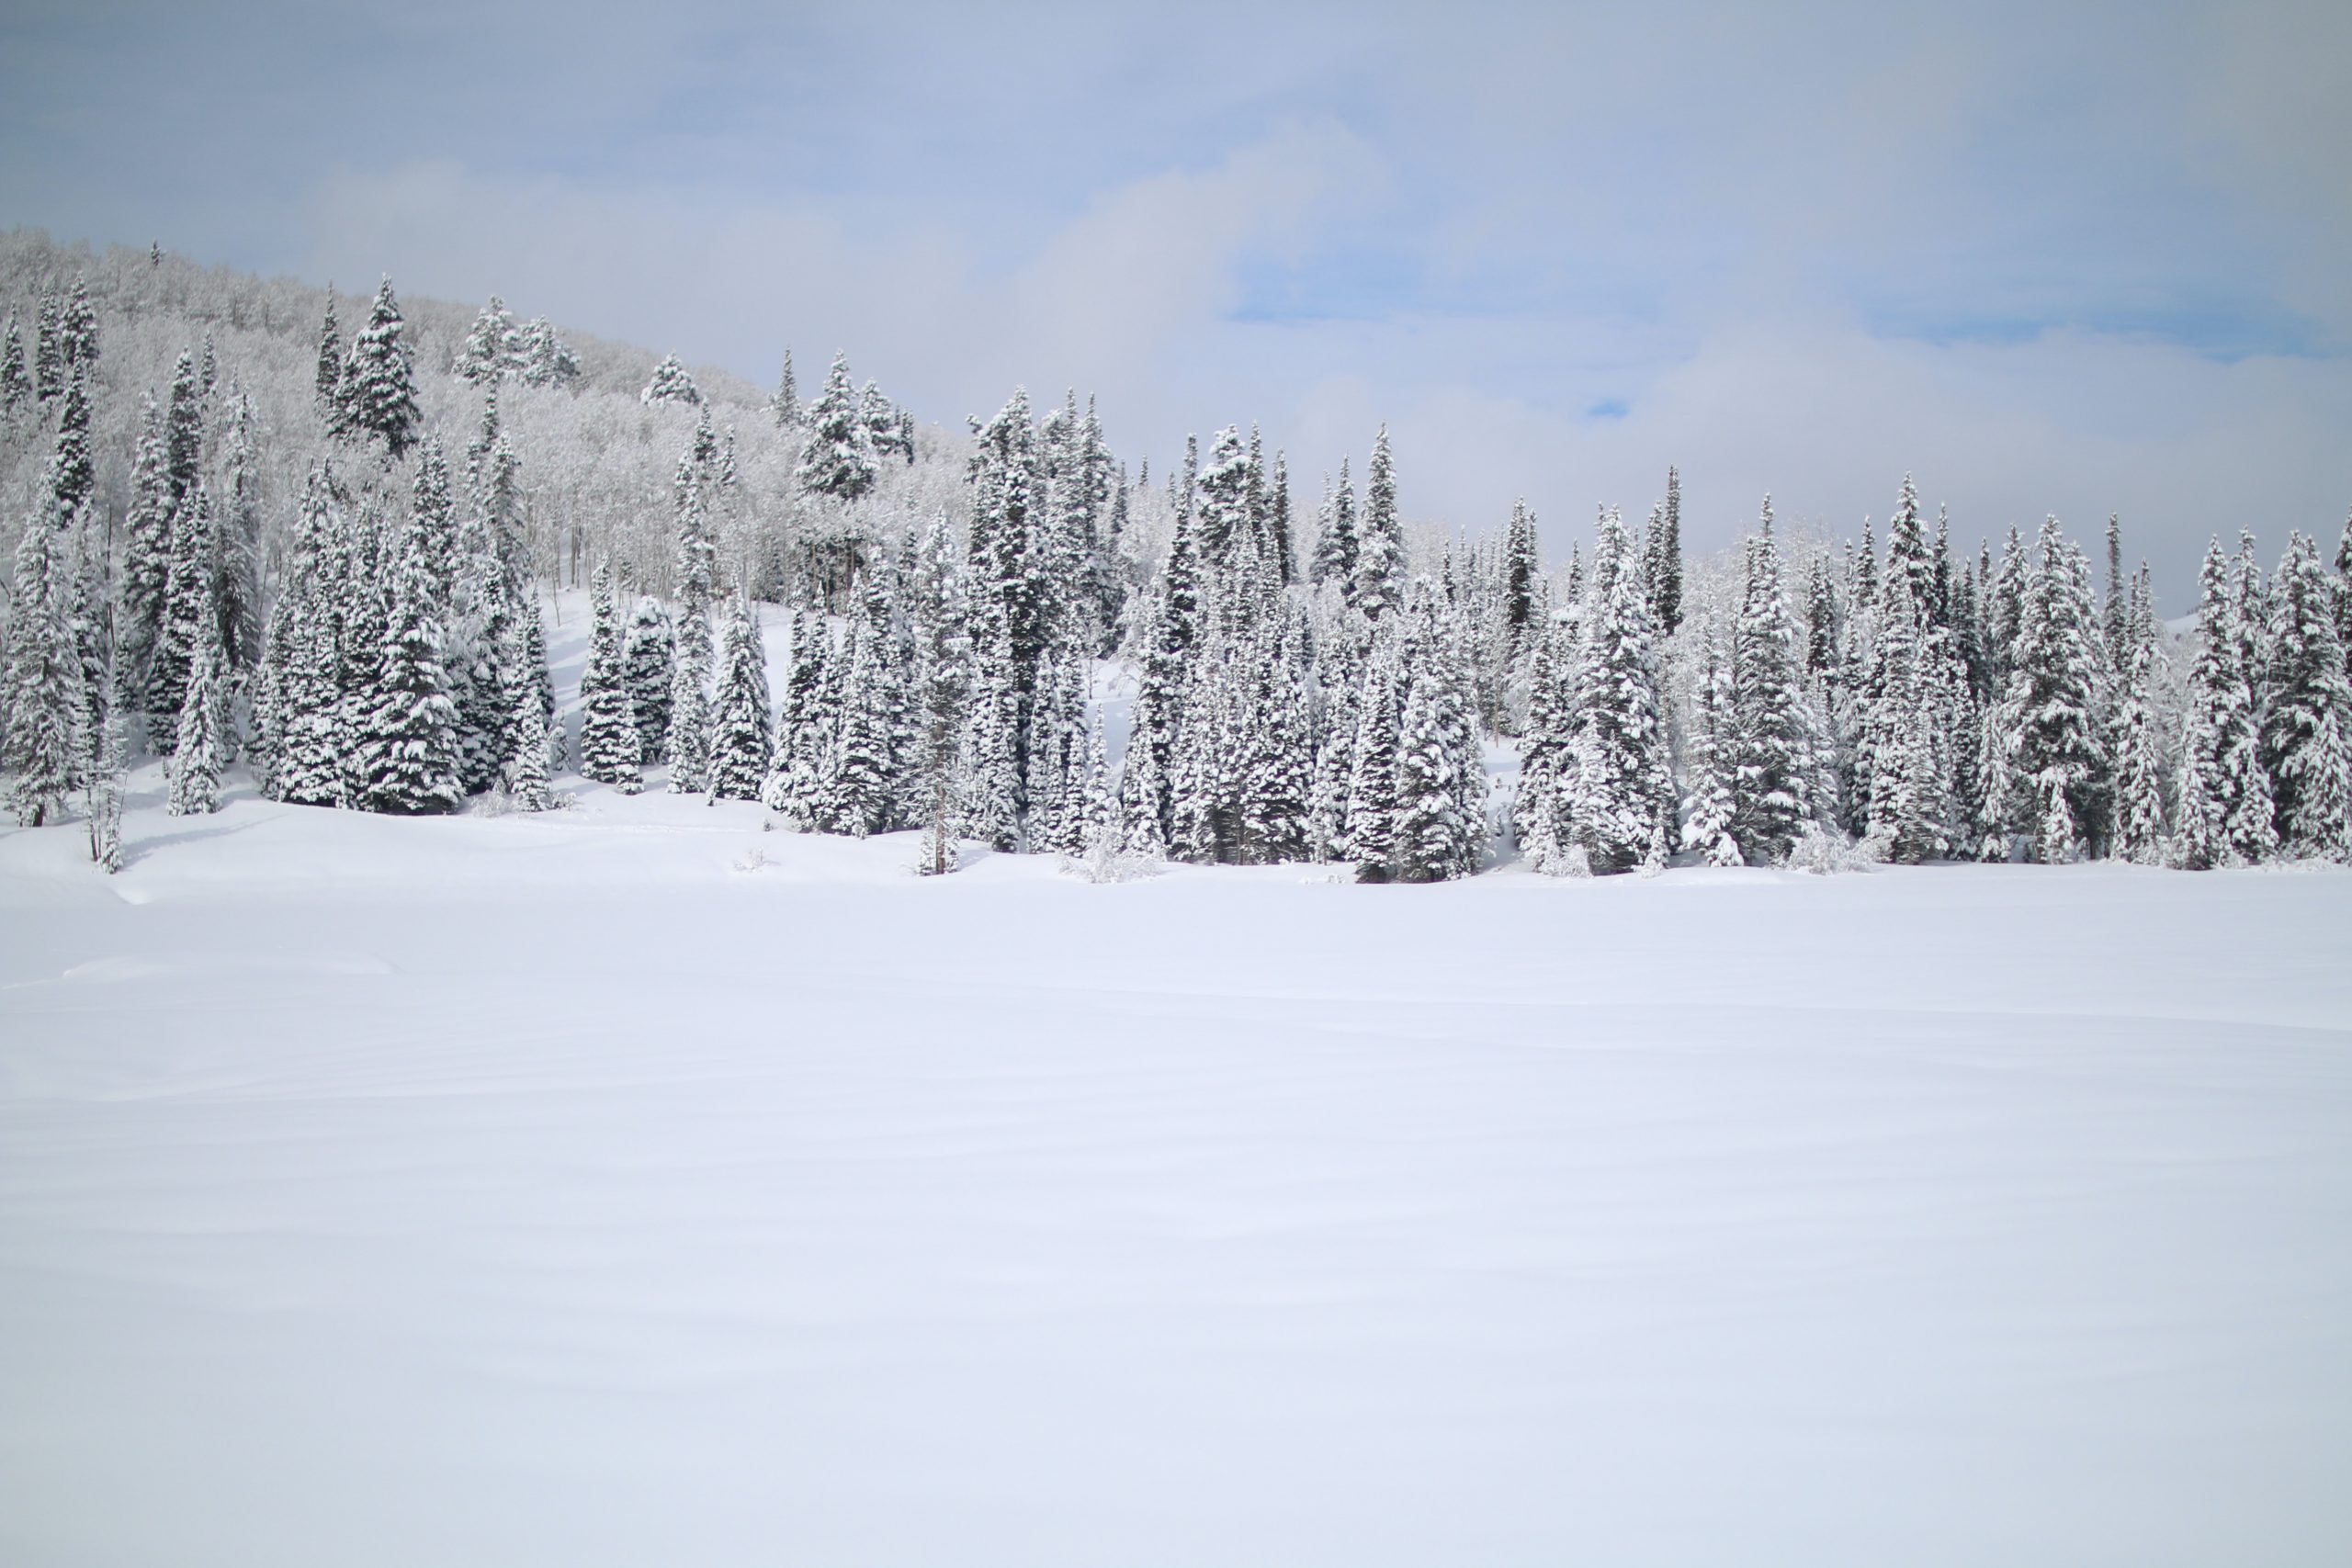 Photographie d'un champ recouvert de neige devant une forêt de pins enneigée. Le ciel est d'un bleu clair et est parsemé de nuages blancs.